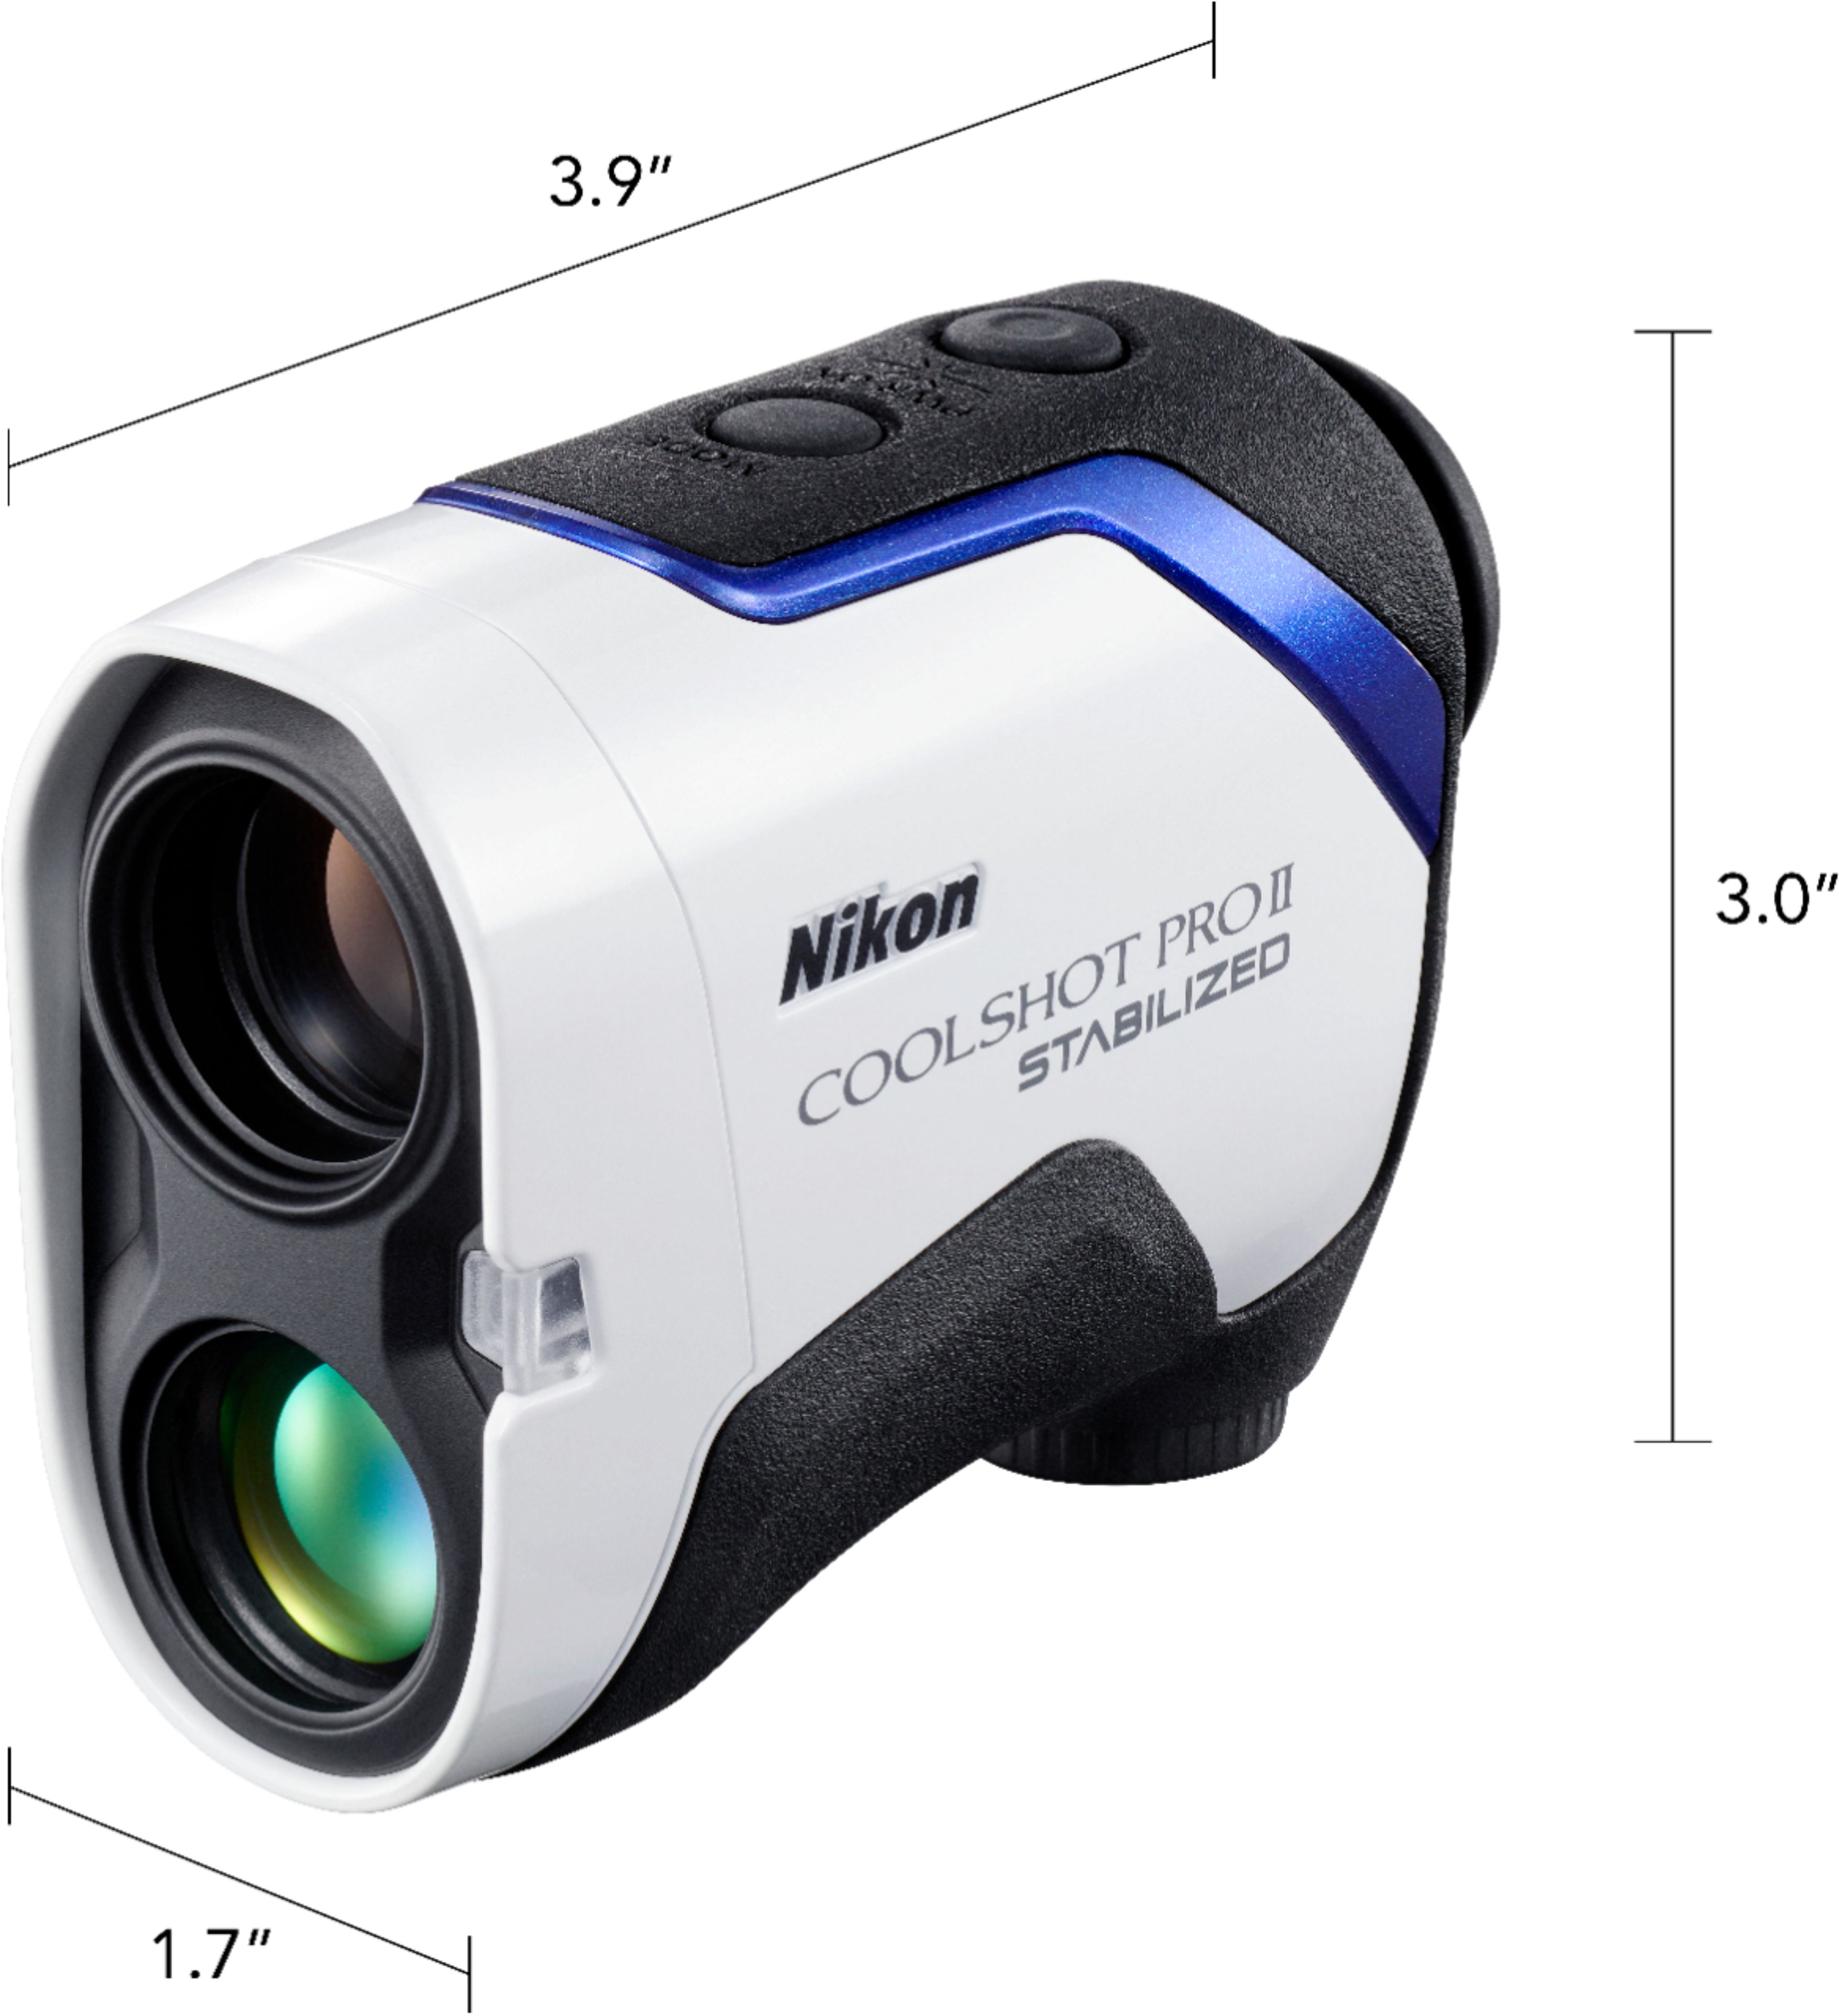 Nikon Coolshot ProII Stabilized Golf Laser Rangefinder White/Blue 